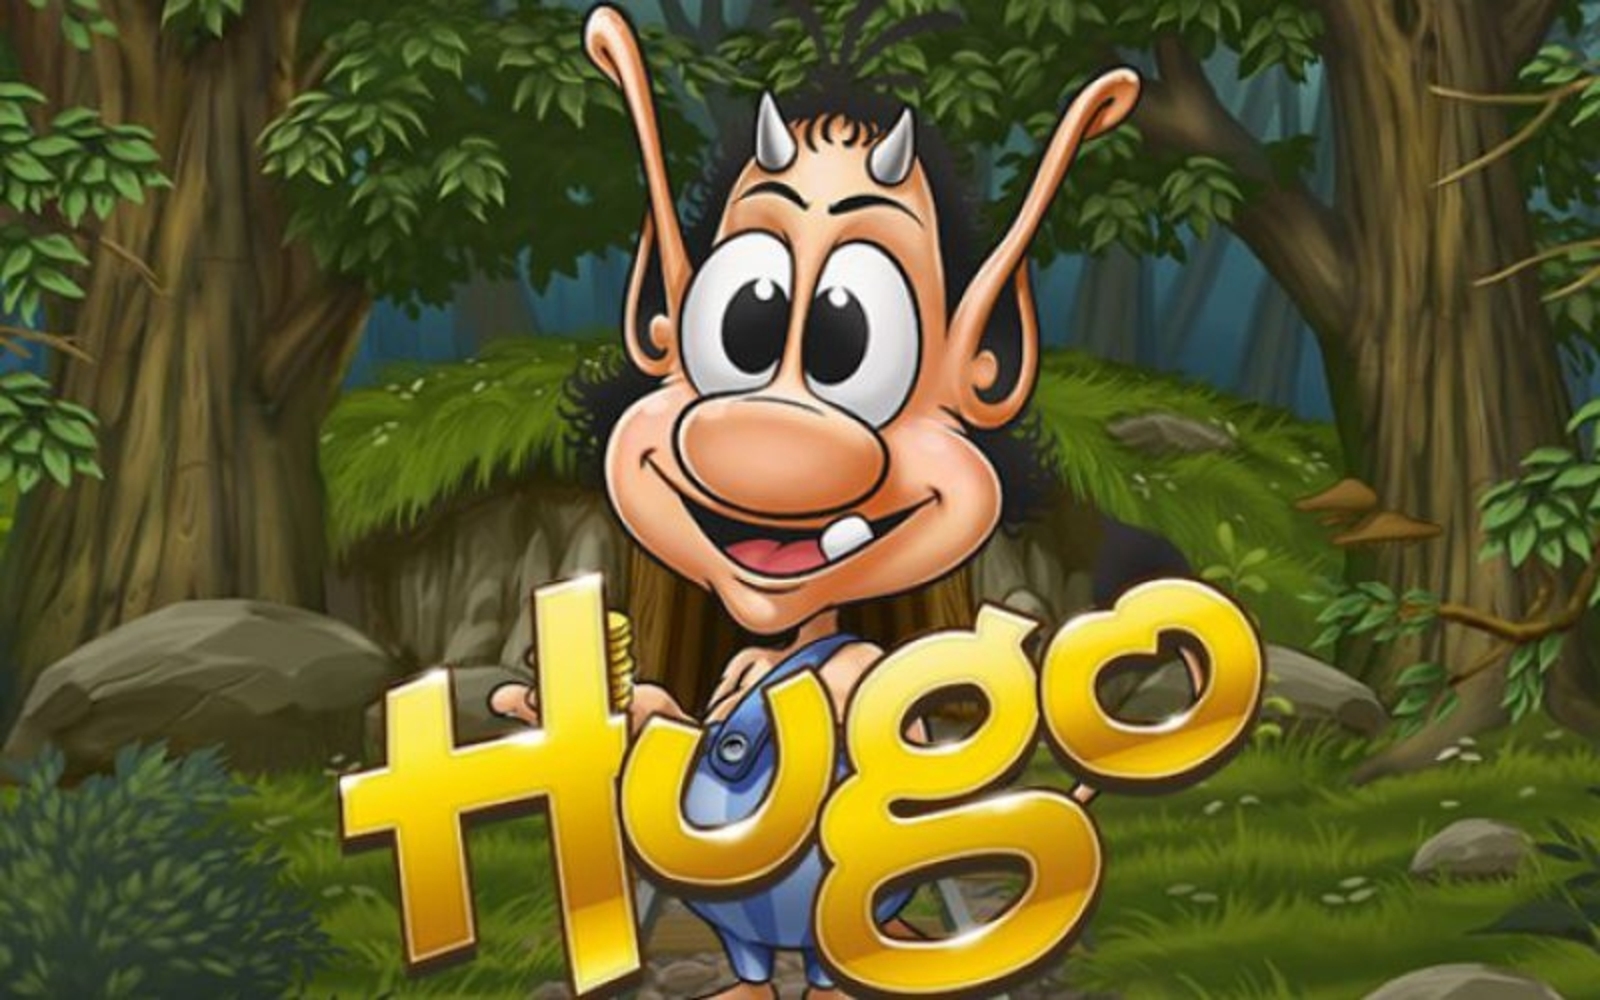 Hugo demo